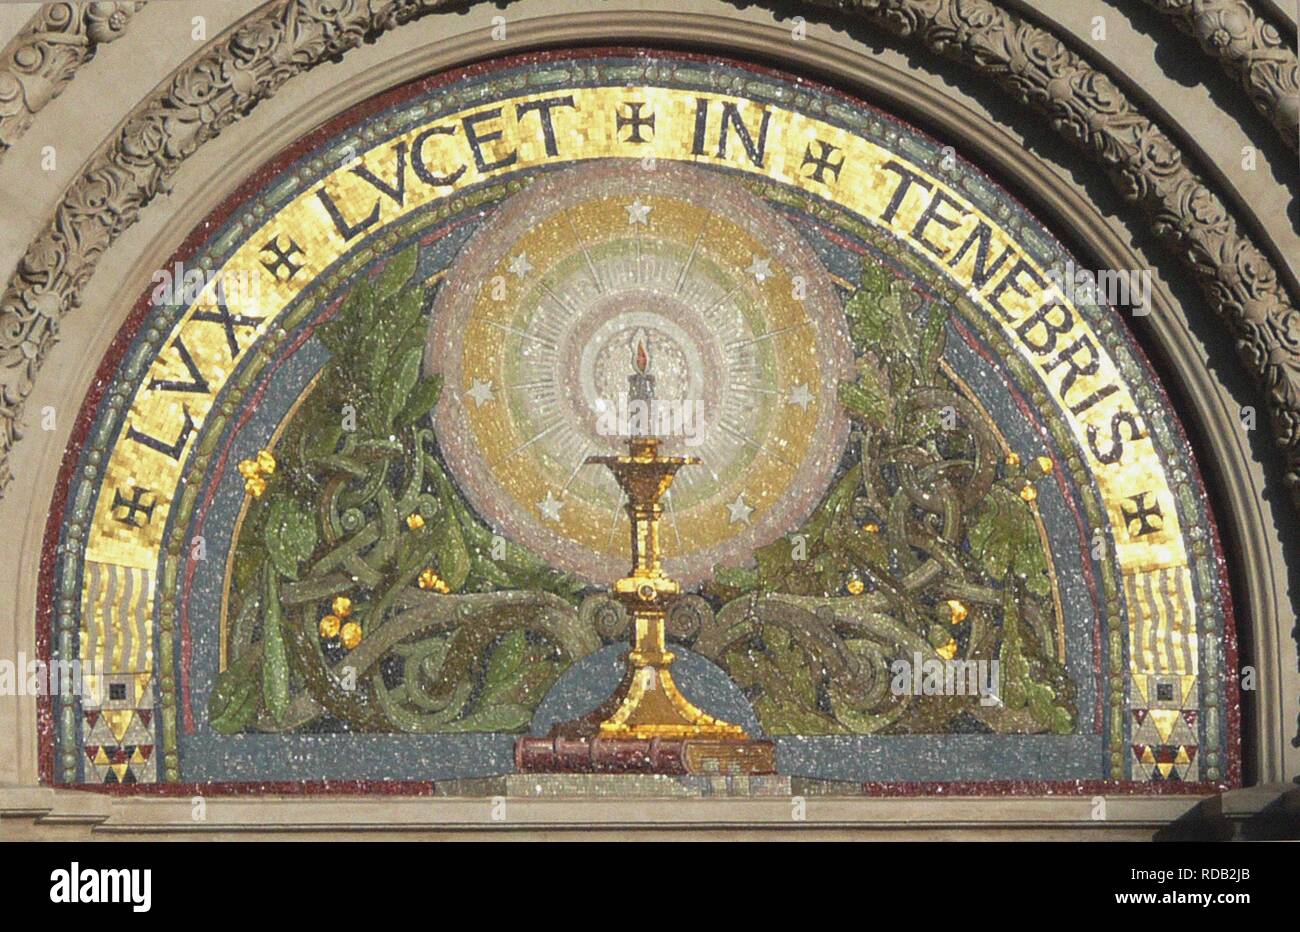 Valdesi simbolo " Lux lucet in tenebris' su il Tempio Valdese di Piazza Cavour a Roma. Museo: Tempio Valdese di Roma. Autore: anonimo. Foto Stock